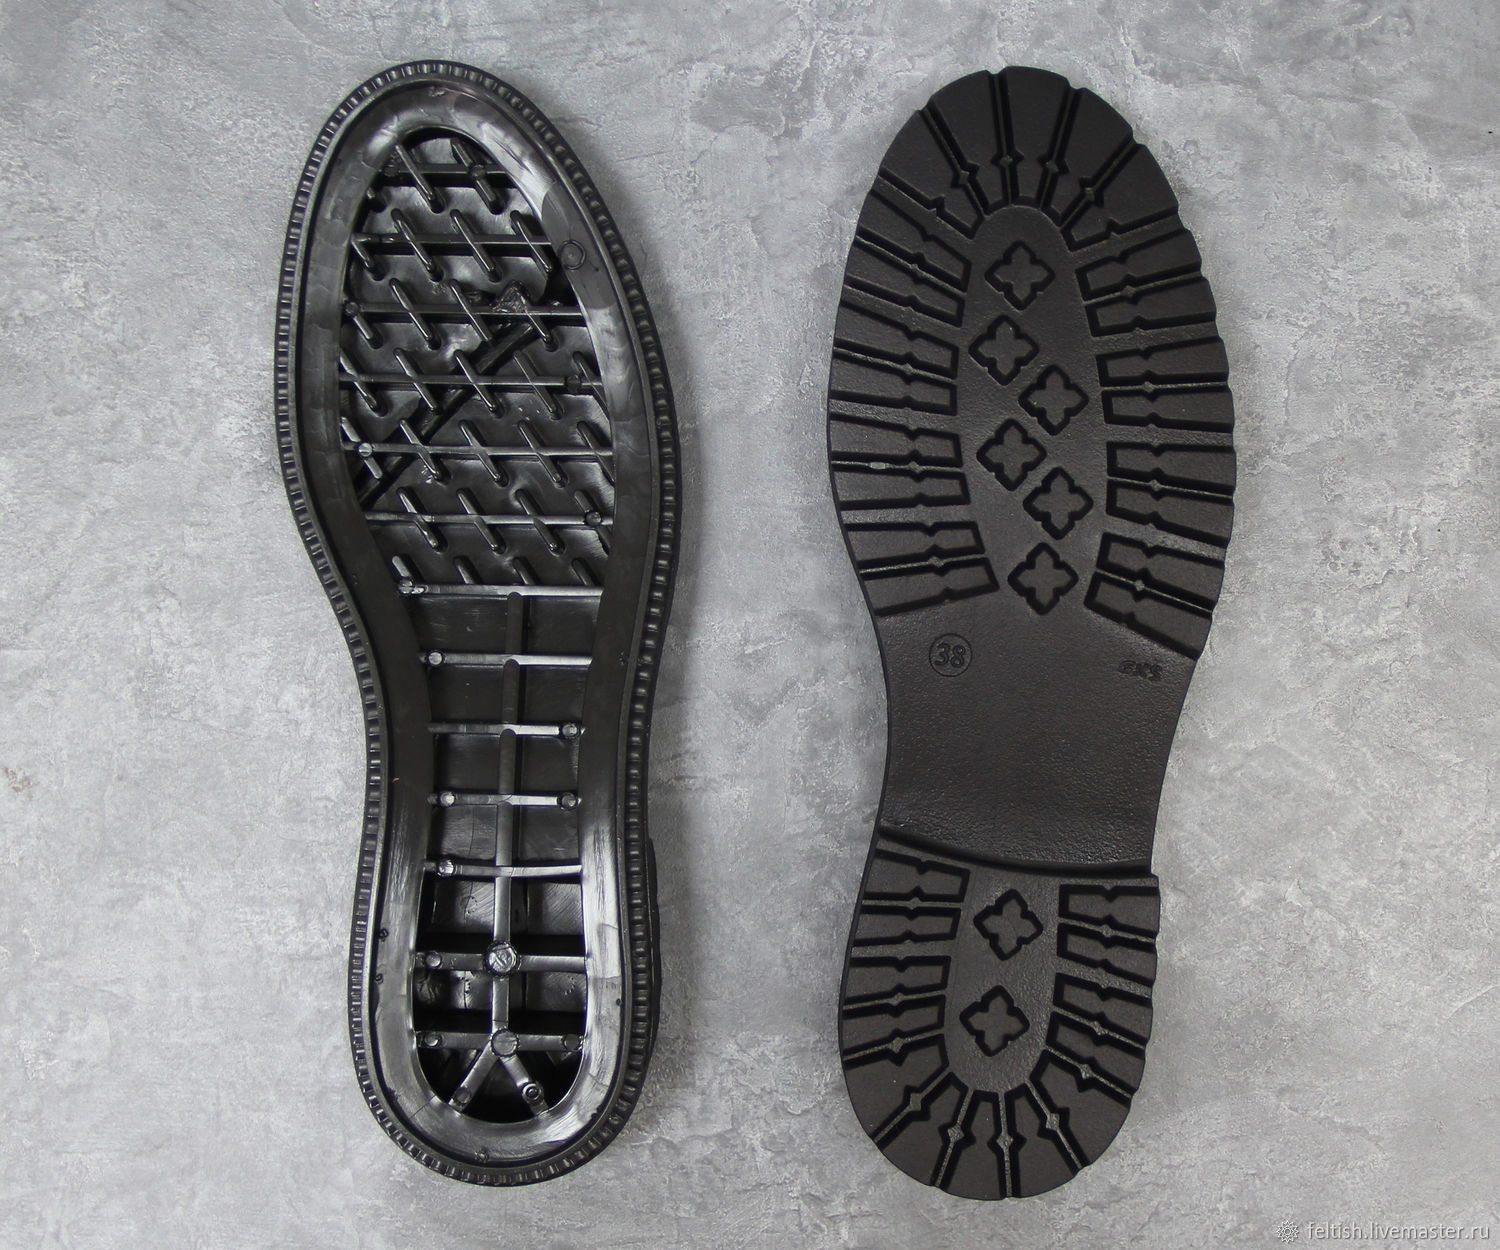 Пластик подошва. Подошва для обуви. Подметка обуви. Форма подошвы обуви. Материал для изготовления подошвы обуви.